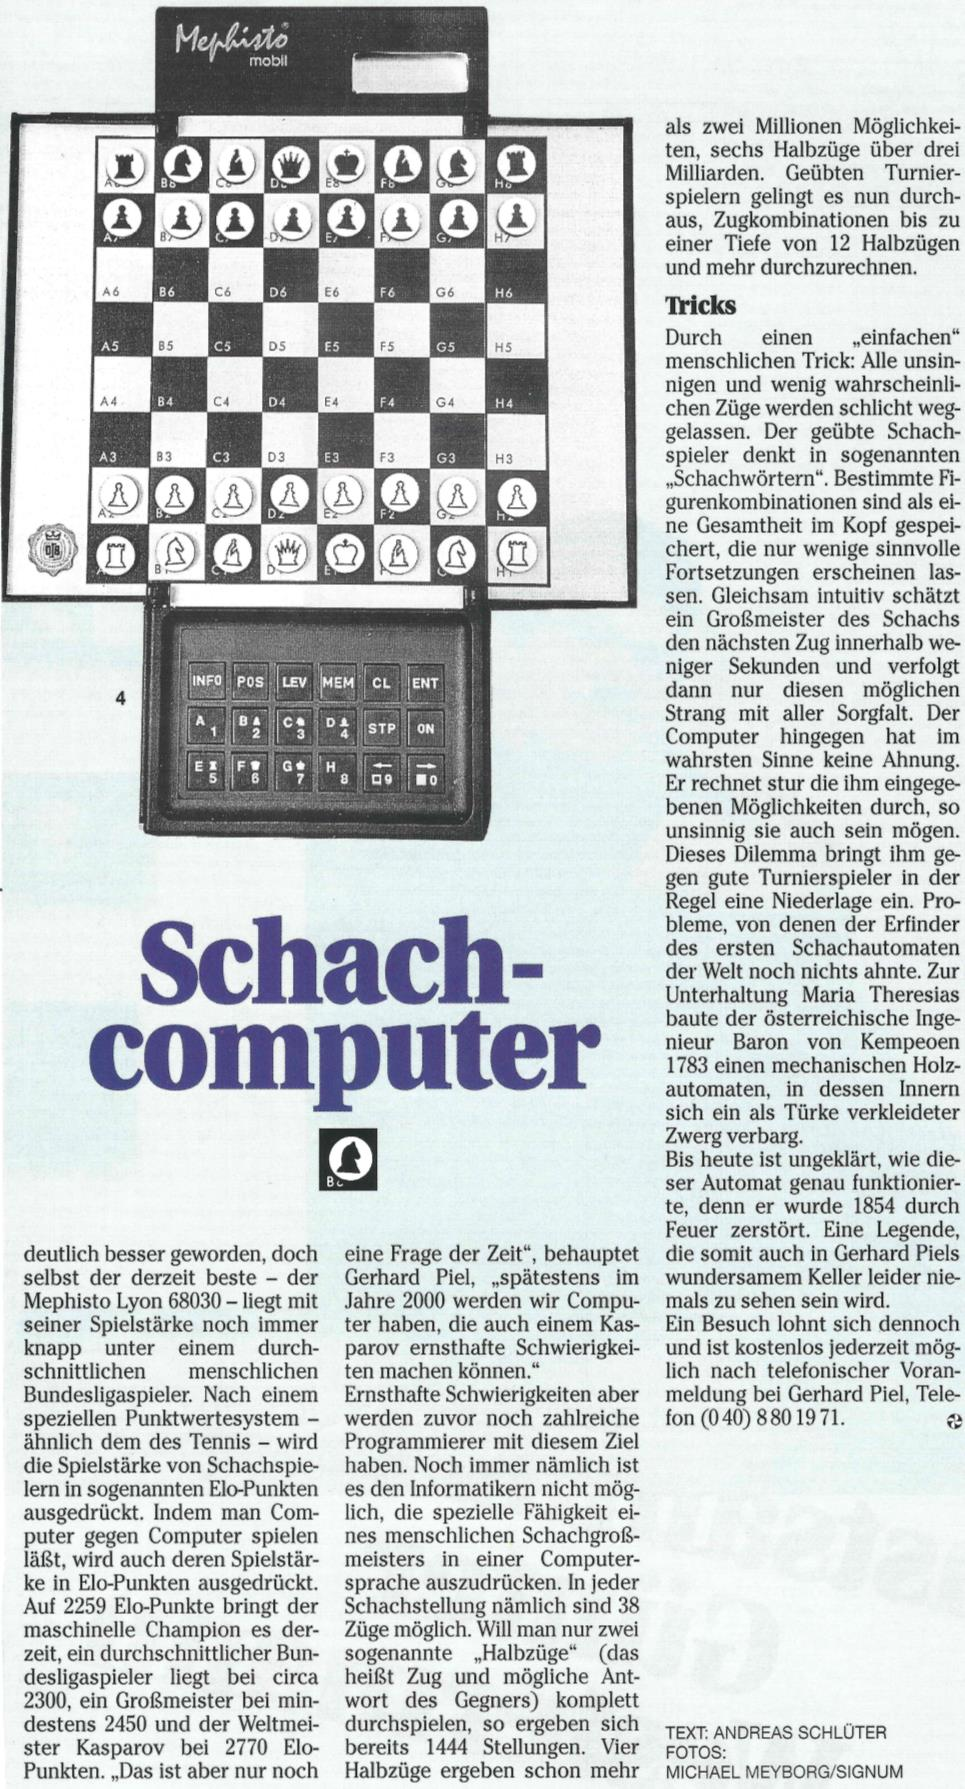 Bericht über Sammler Gerhard Piel Schachcomputermuseum (Quelle: Zeitschrift